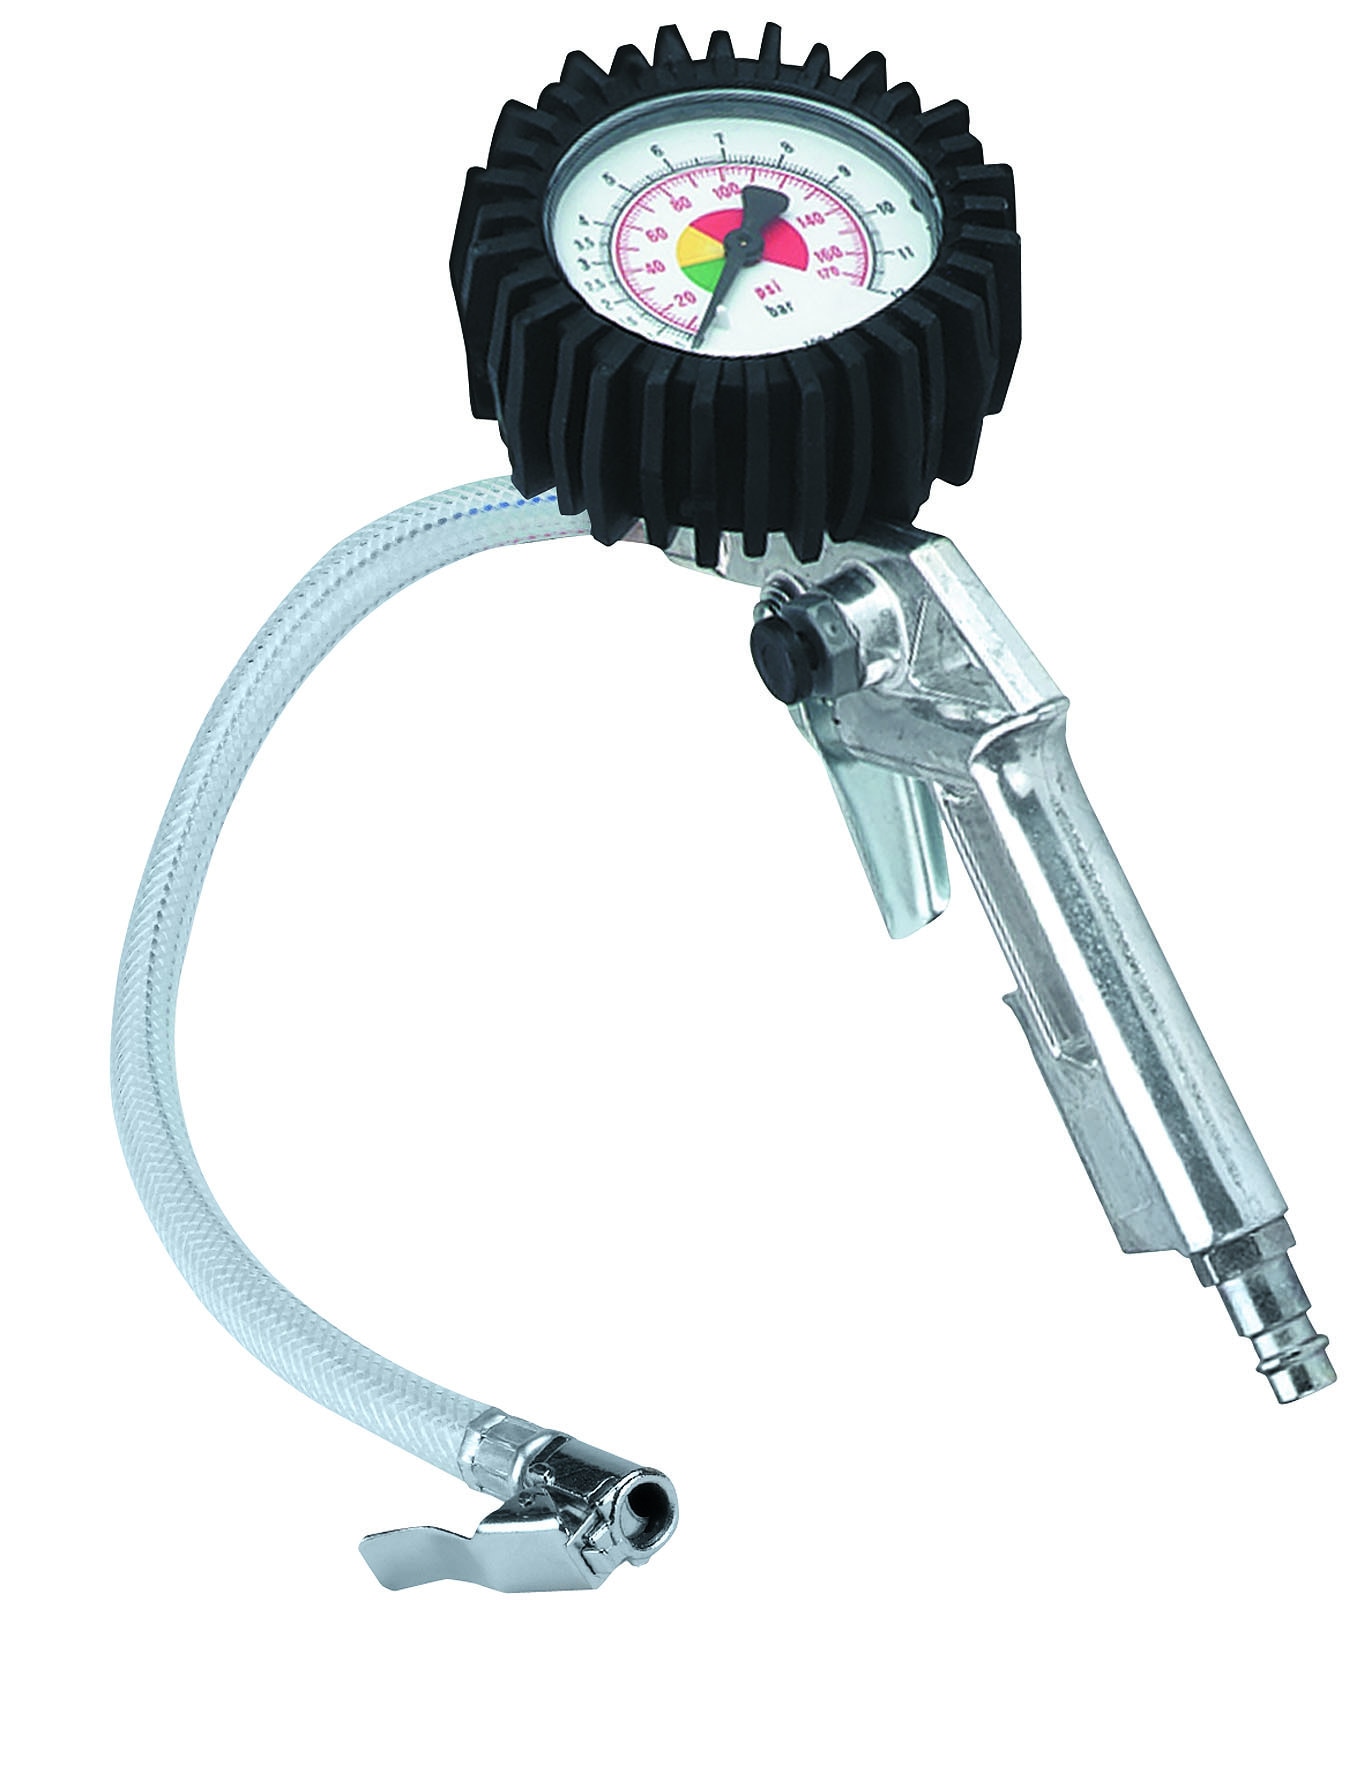 Dæktrykspistol med manometer til trykluft | Elgiganten